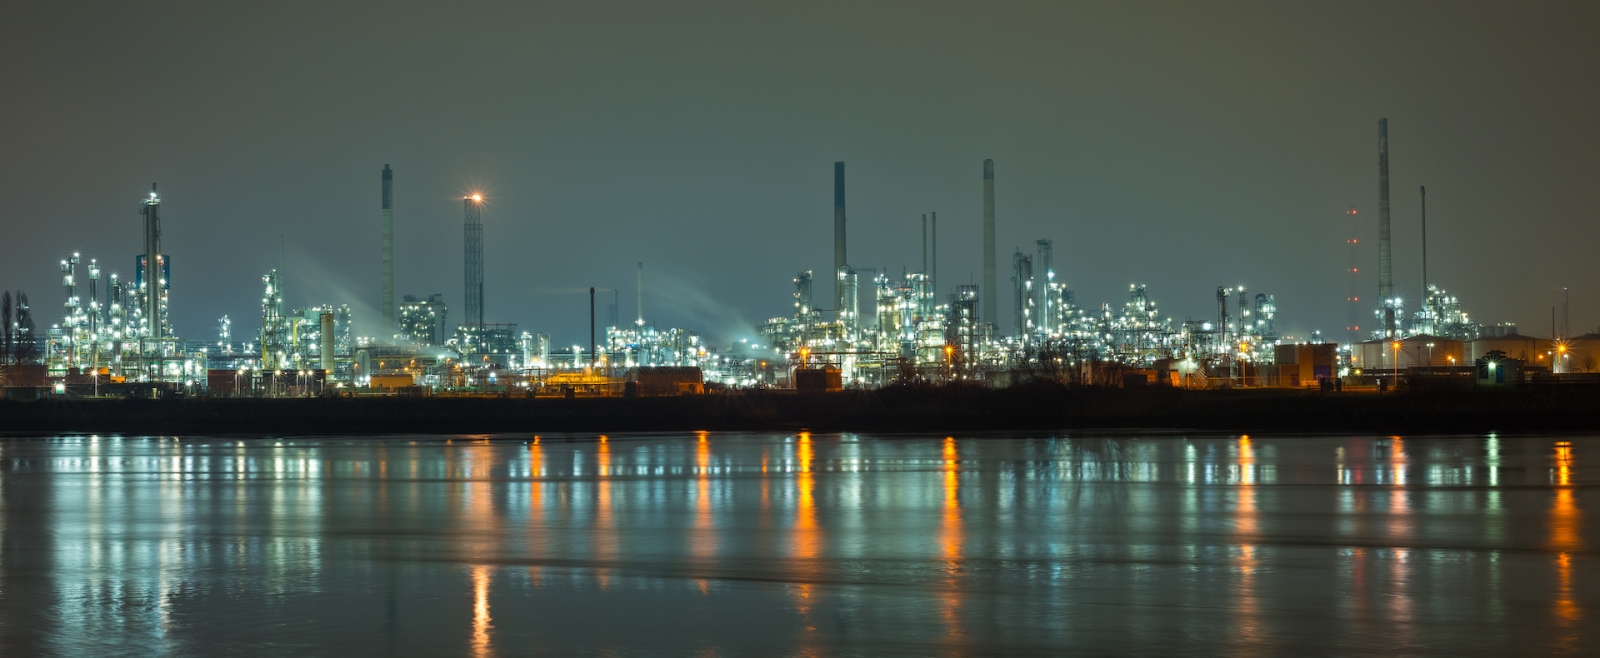 Panorama dell'industria petrolchimica a Rotterdam, Paesi Bassi durante la notte